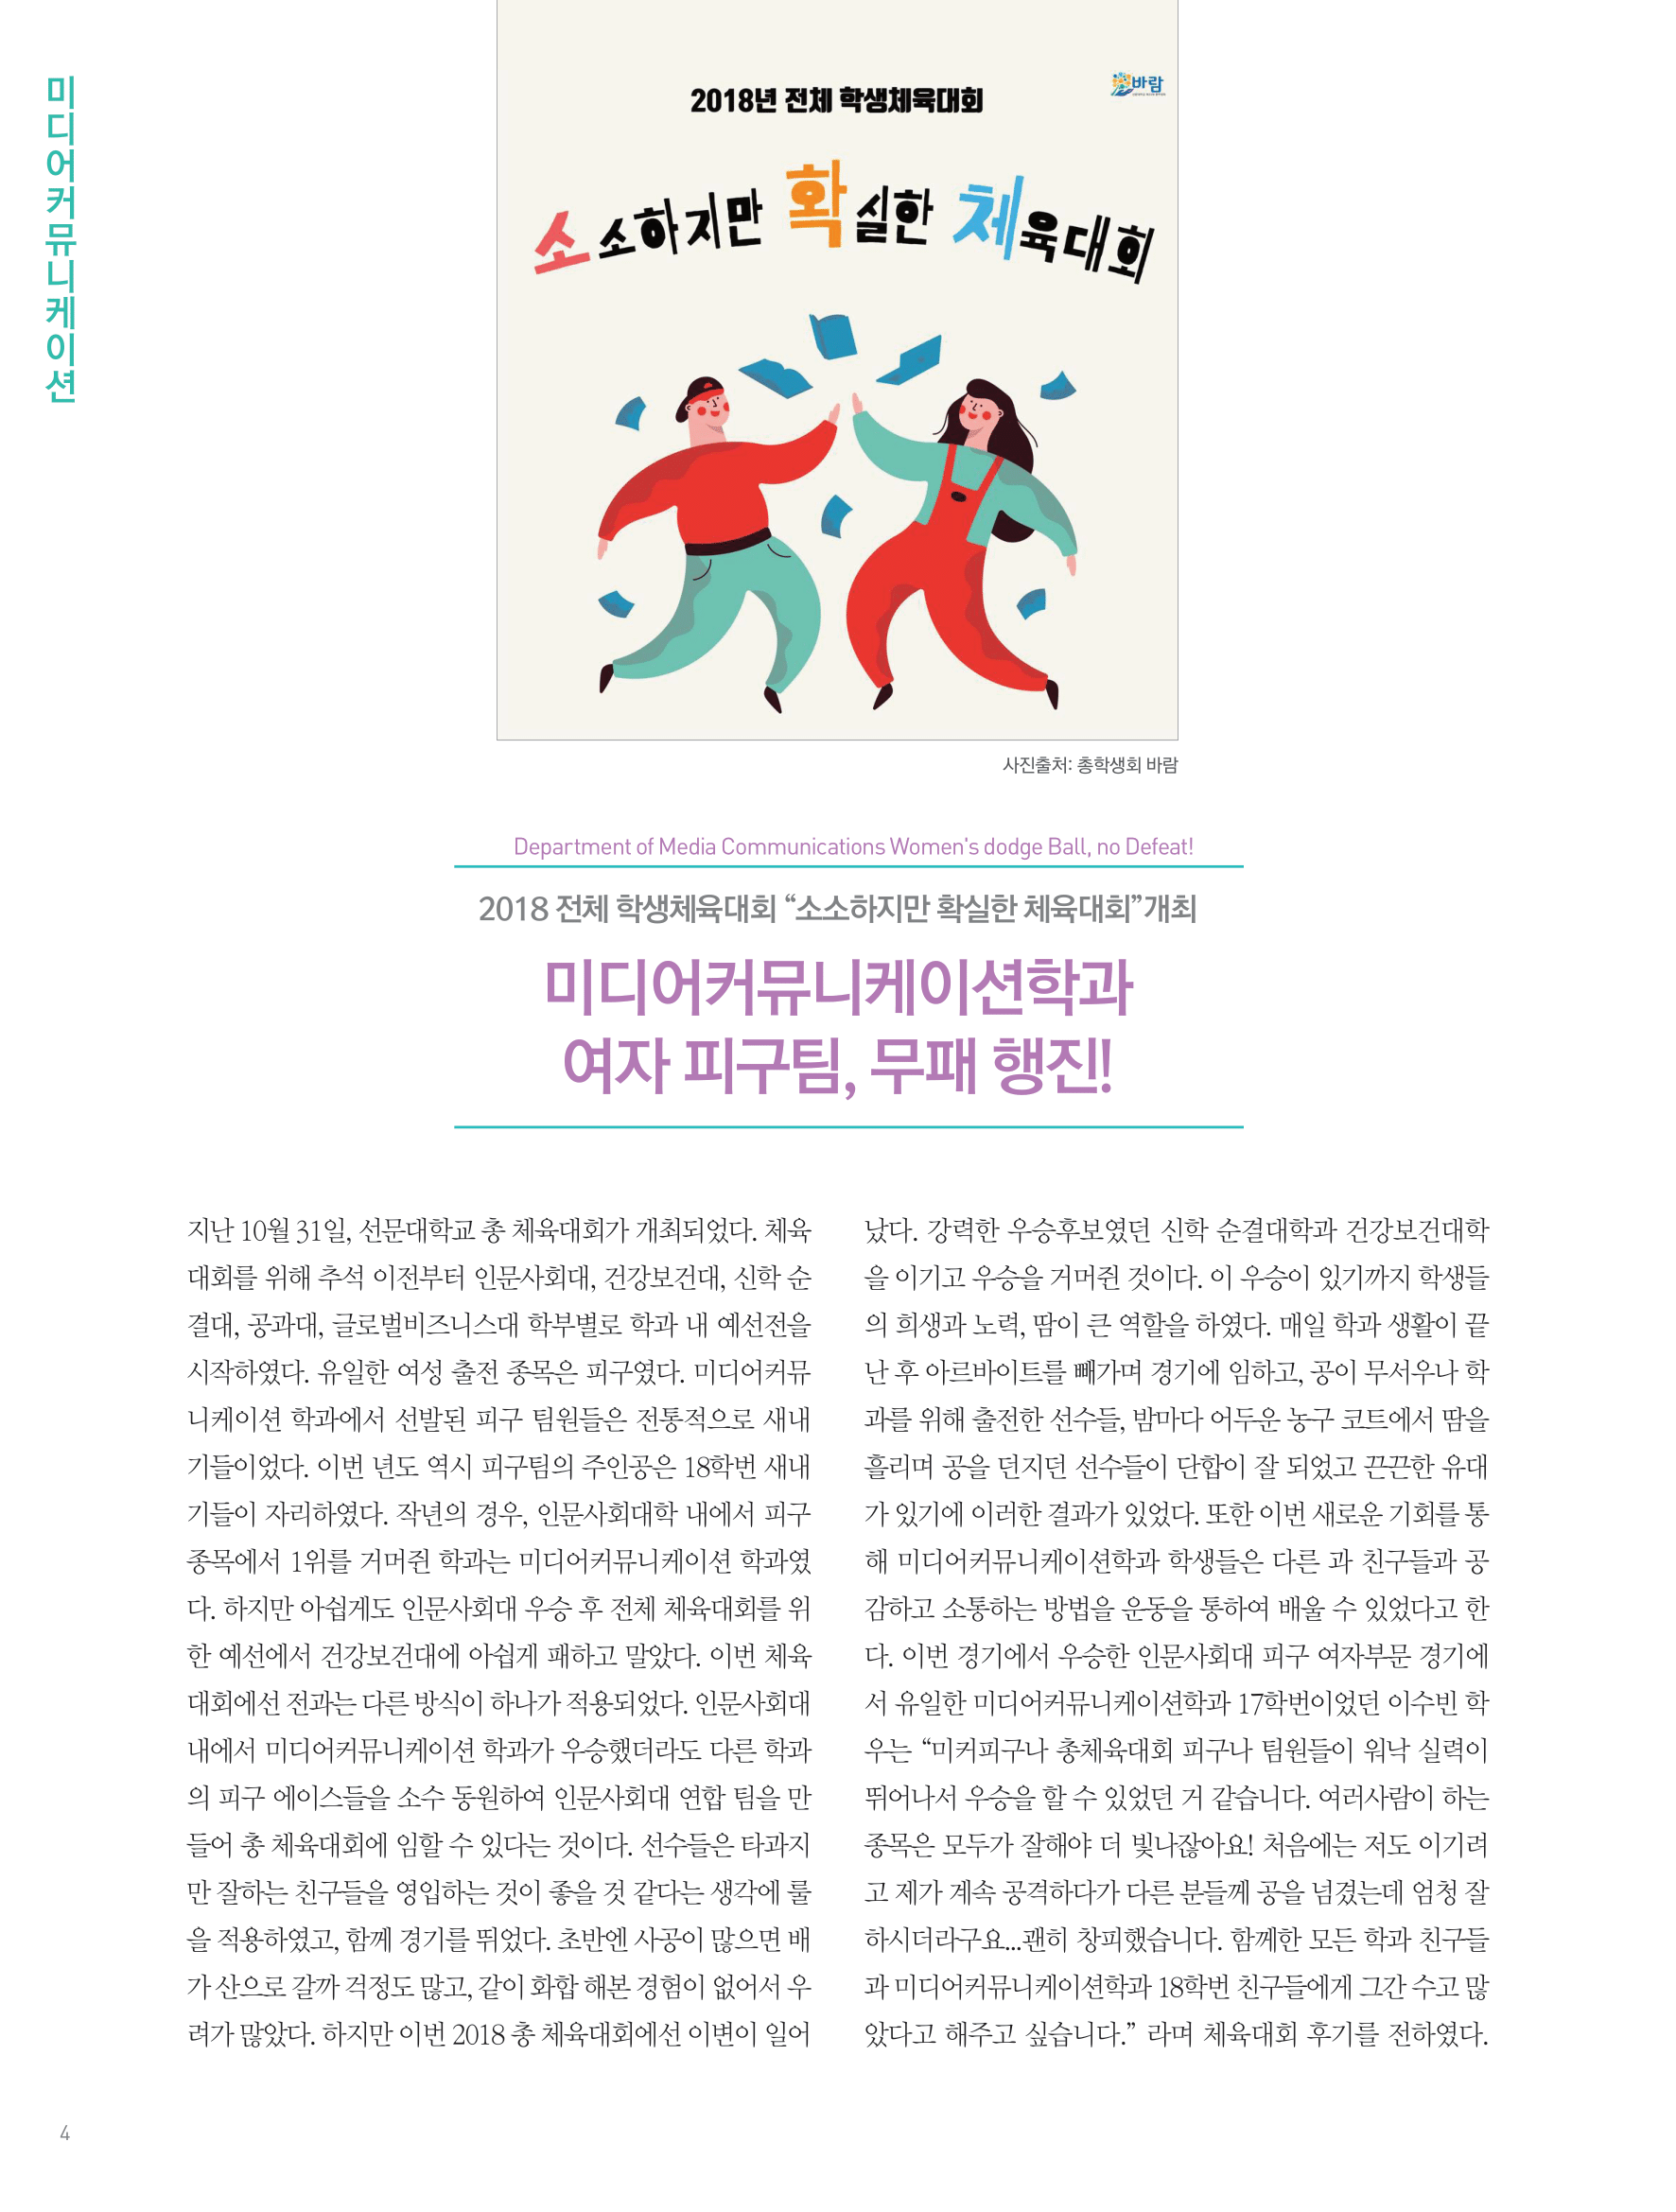 뜻새김 신문 72호 4